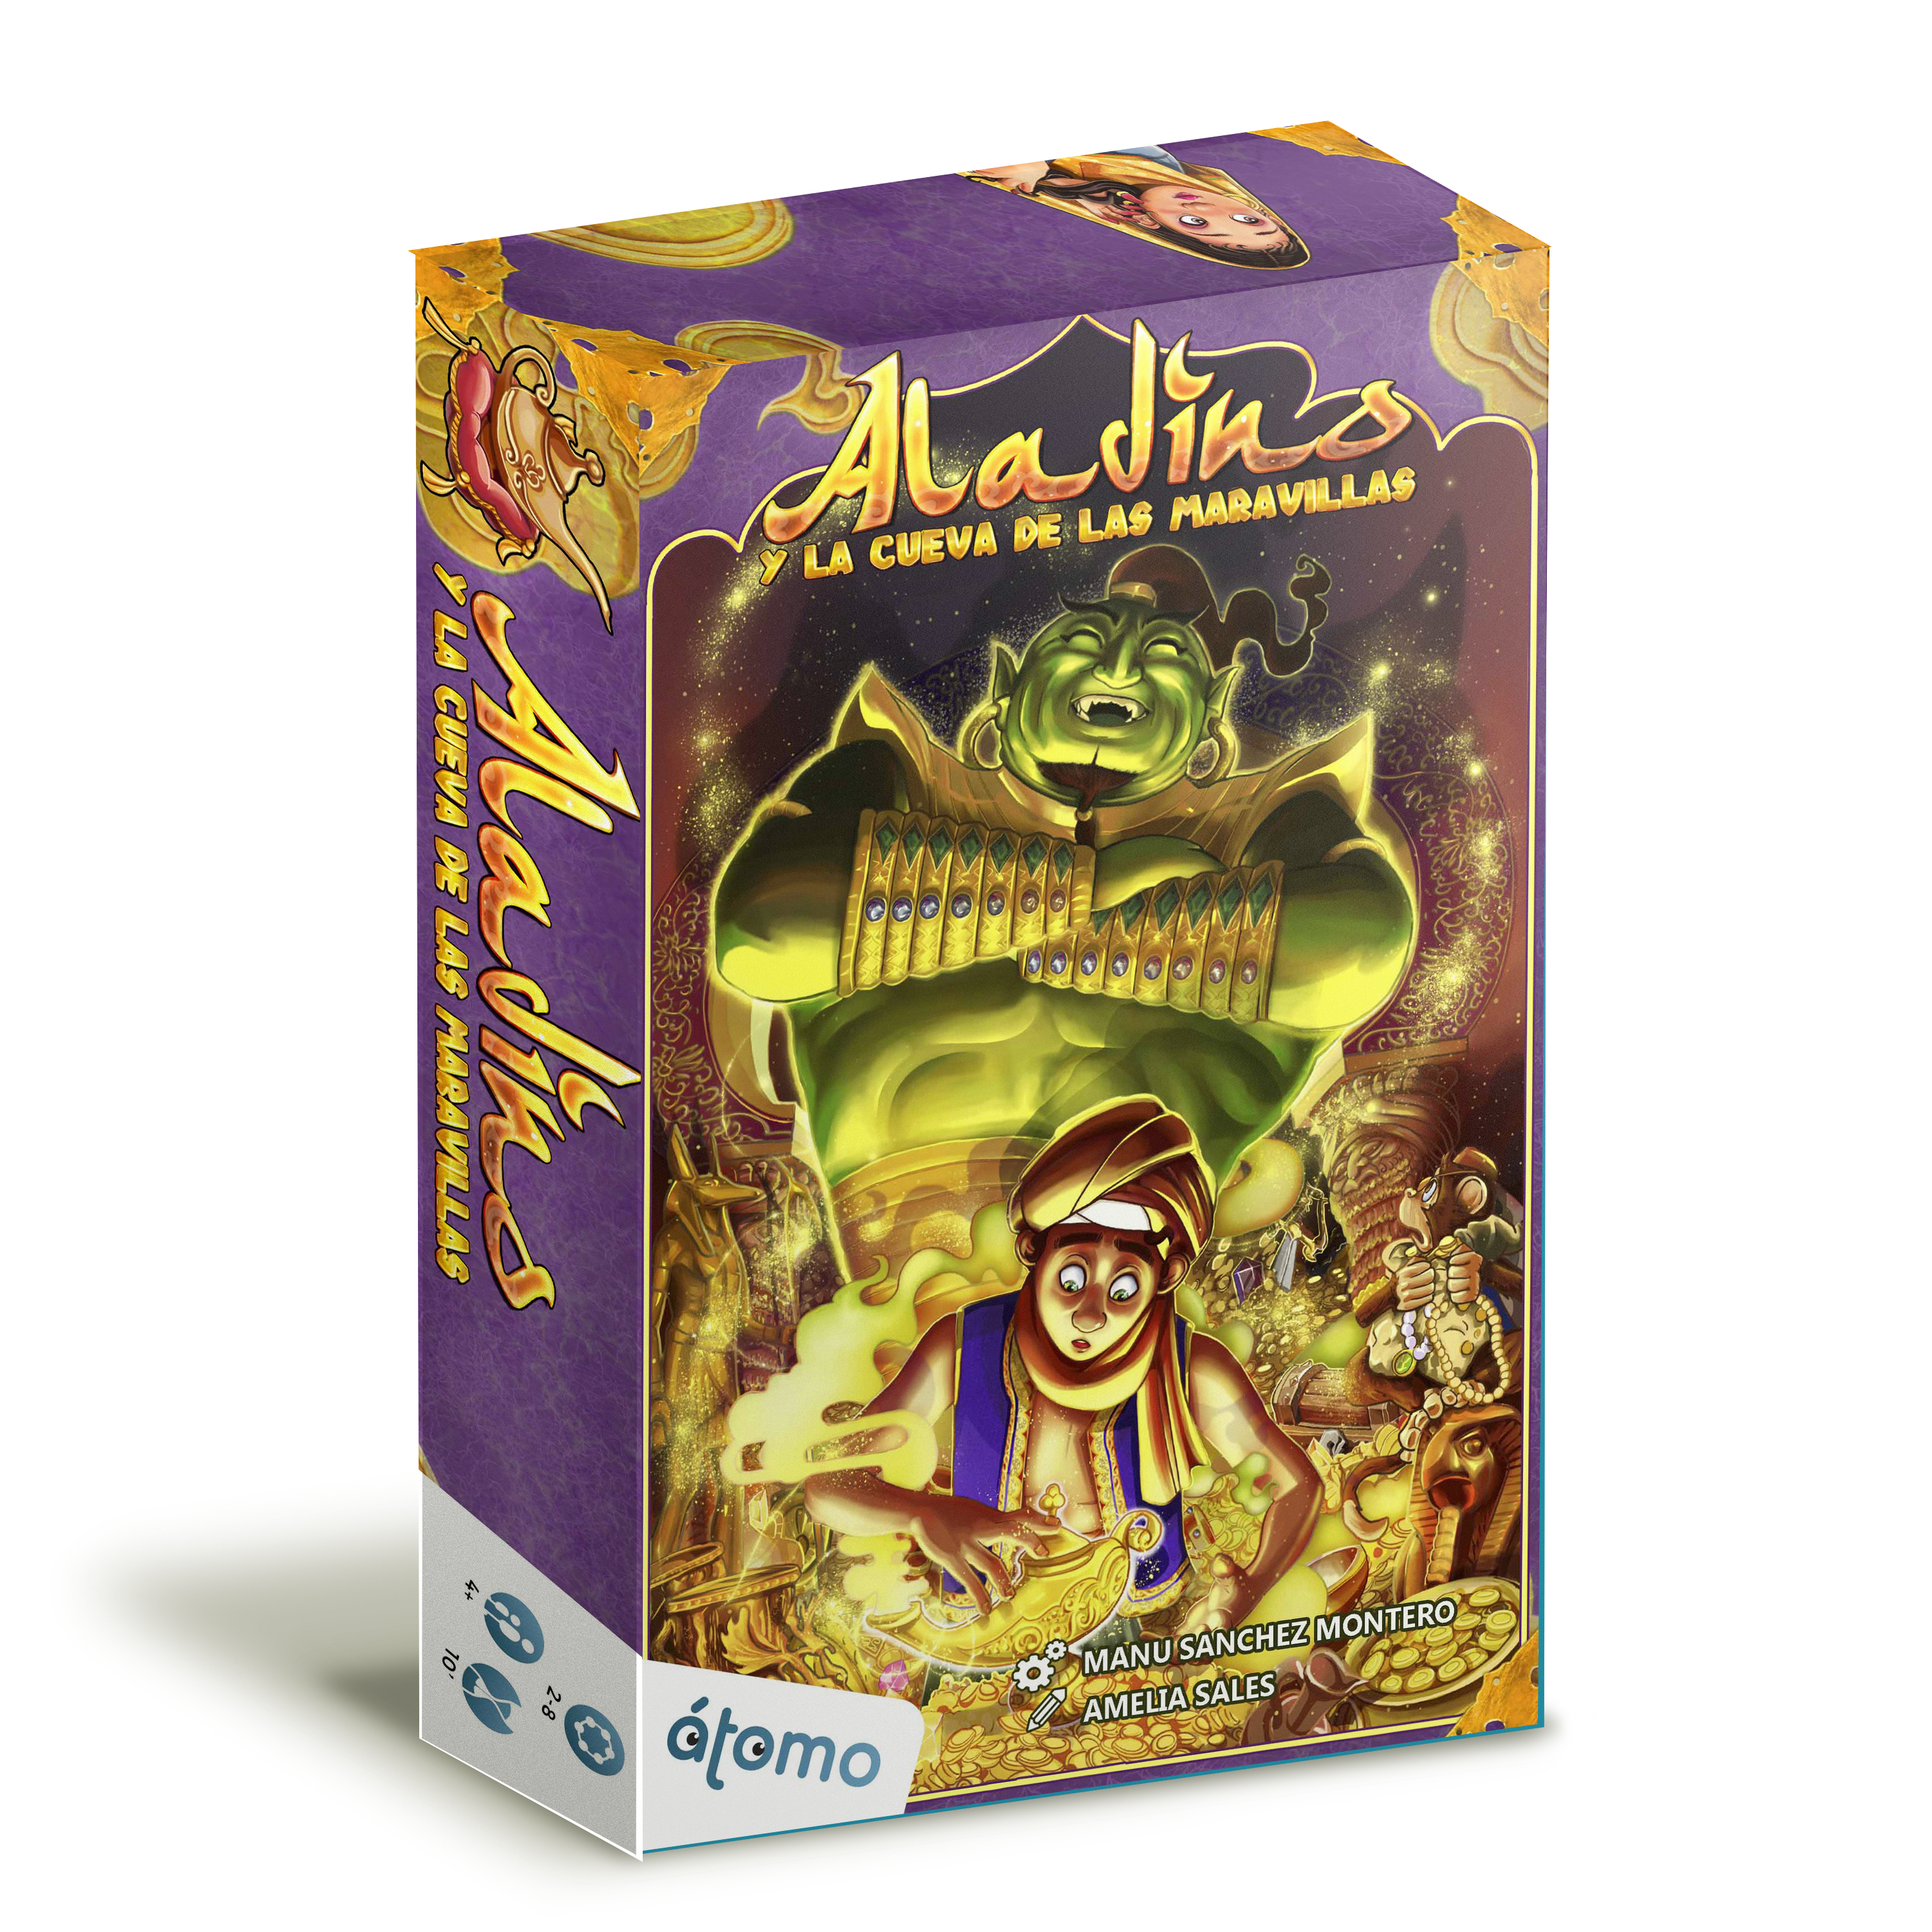 Caja del juego de mesa Aladino y la cueva de las maravillas